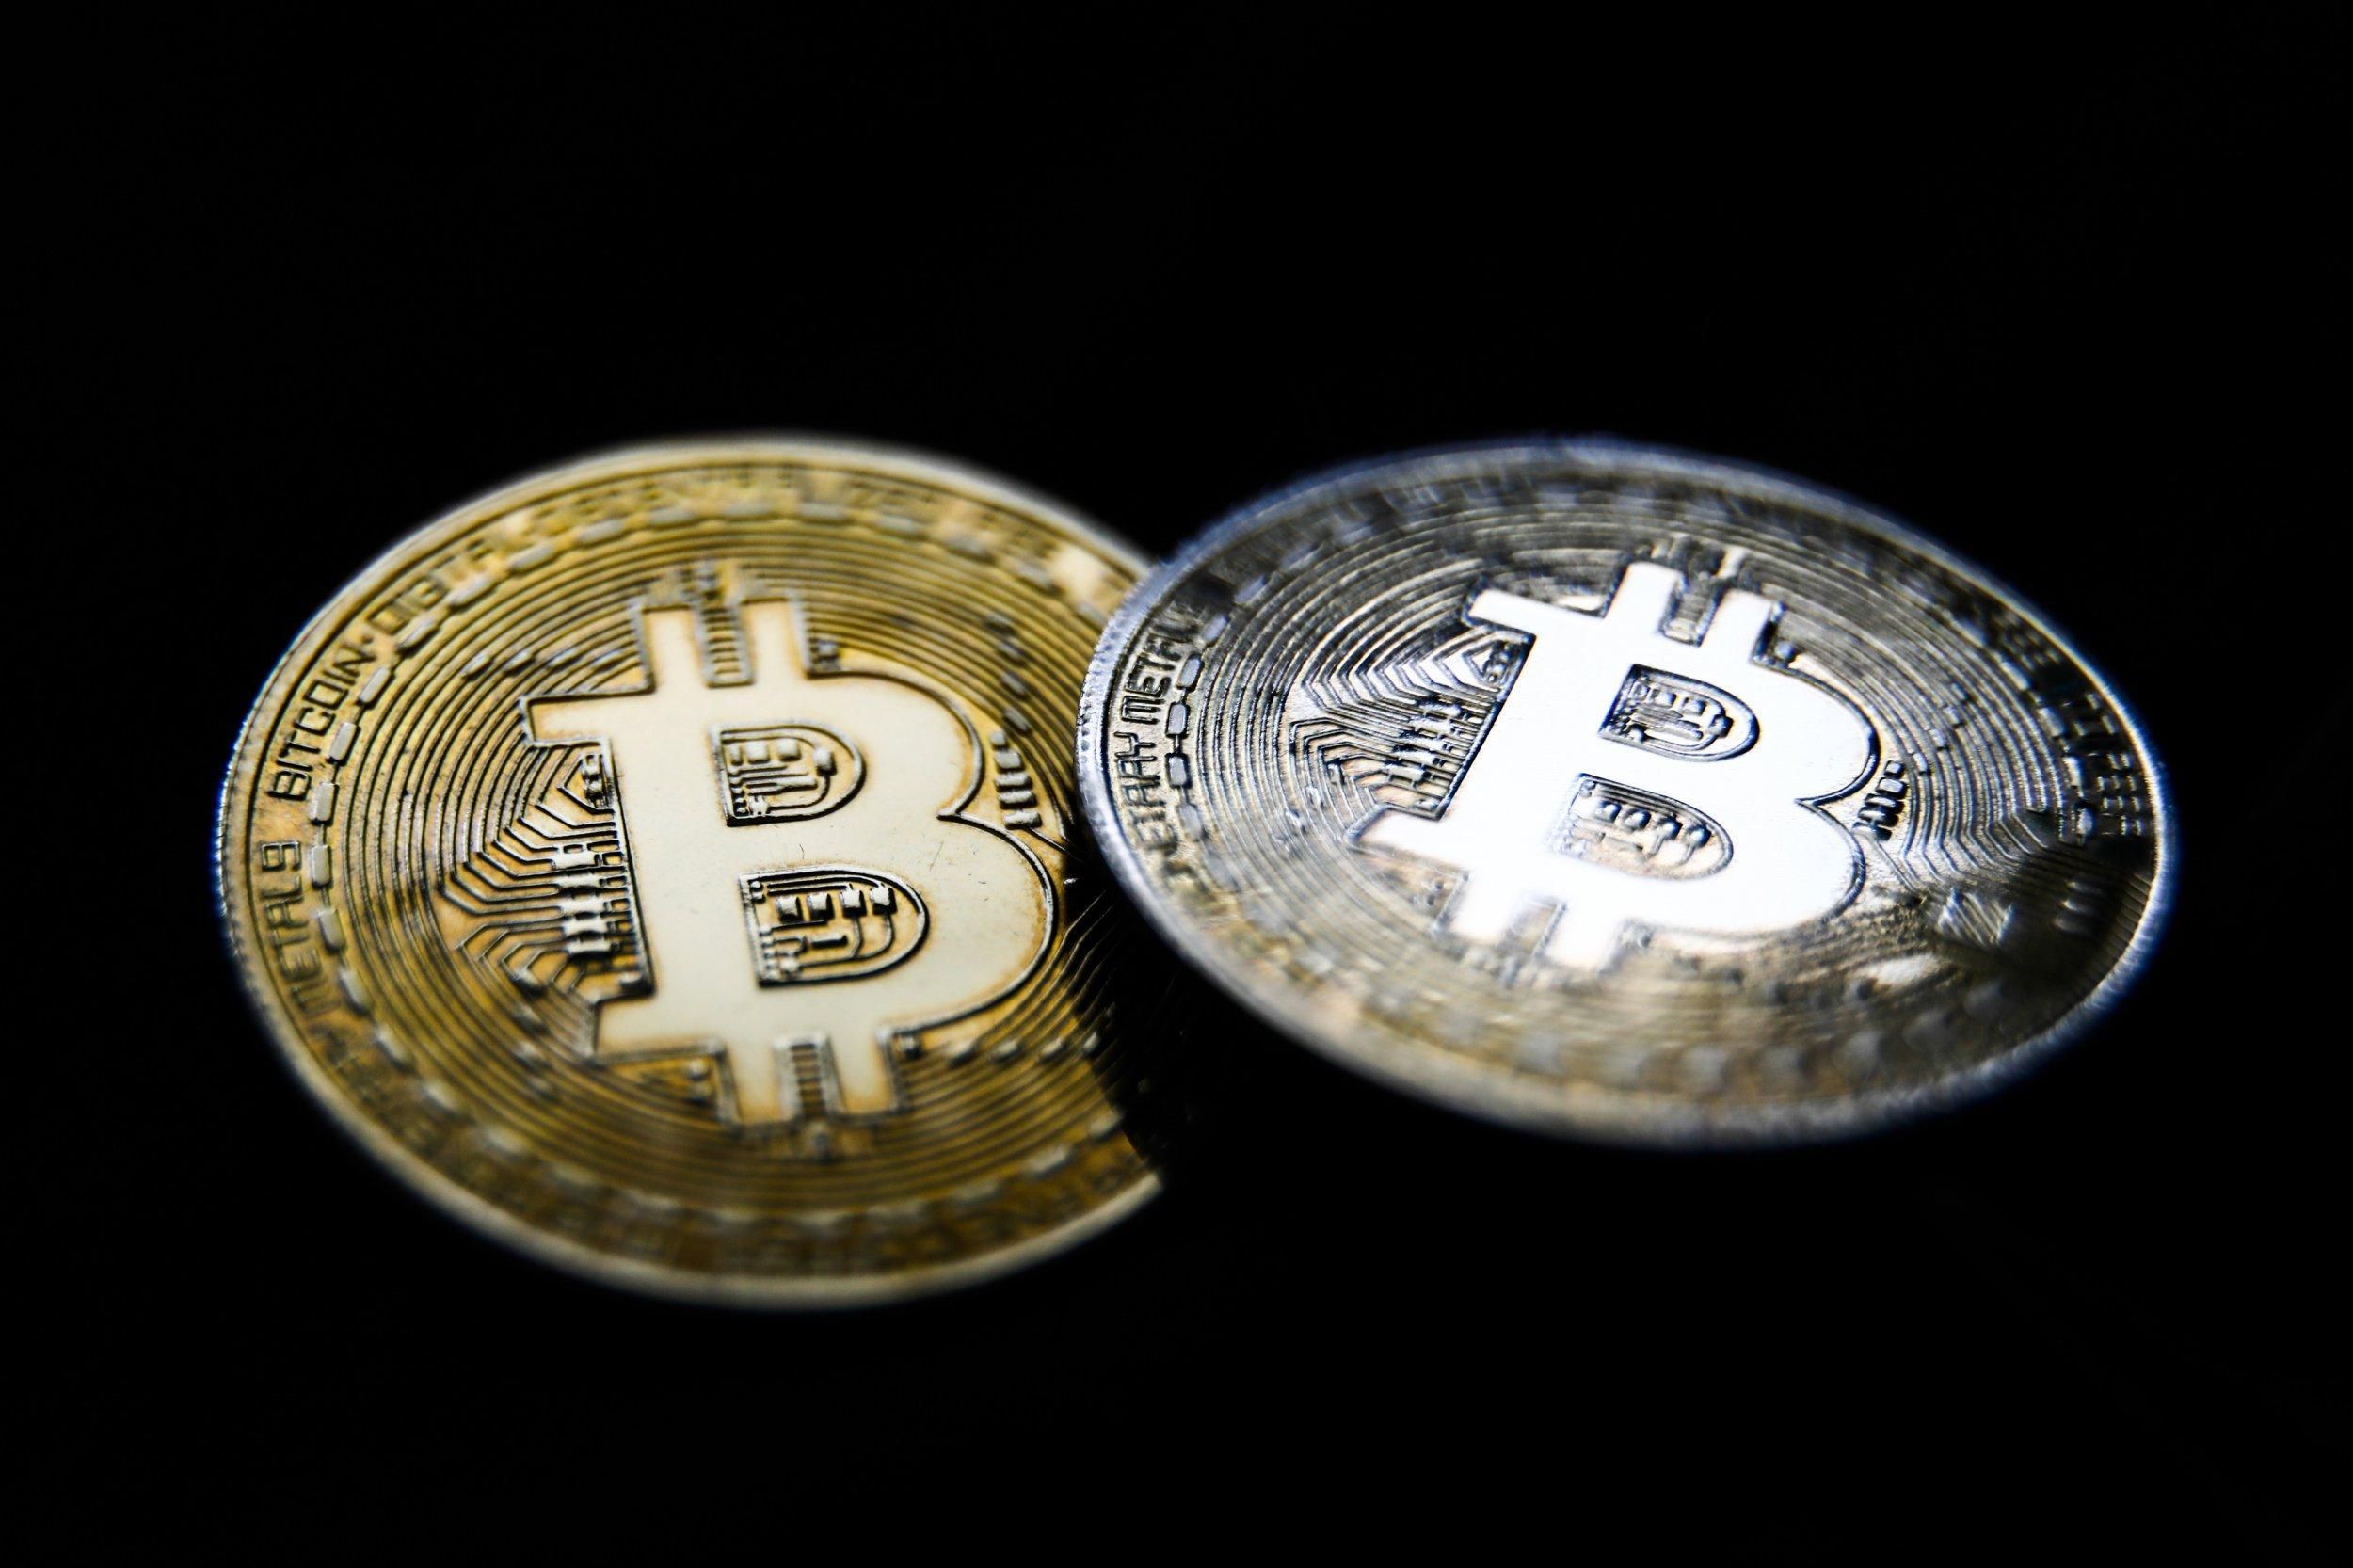 Биткоин, Ethereum и другие монеты снова растут в цене: что происходит на рынке криптовалют - новости биткоин - Финансы